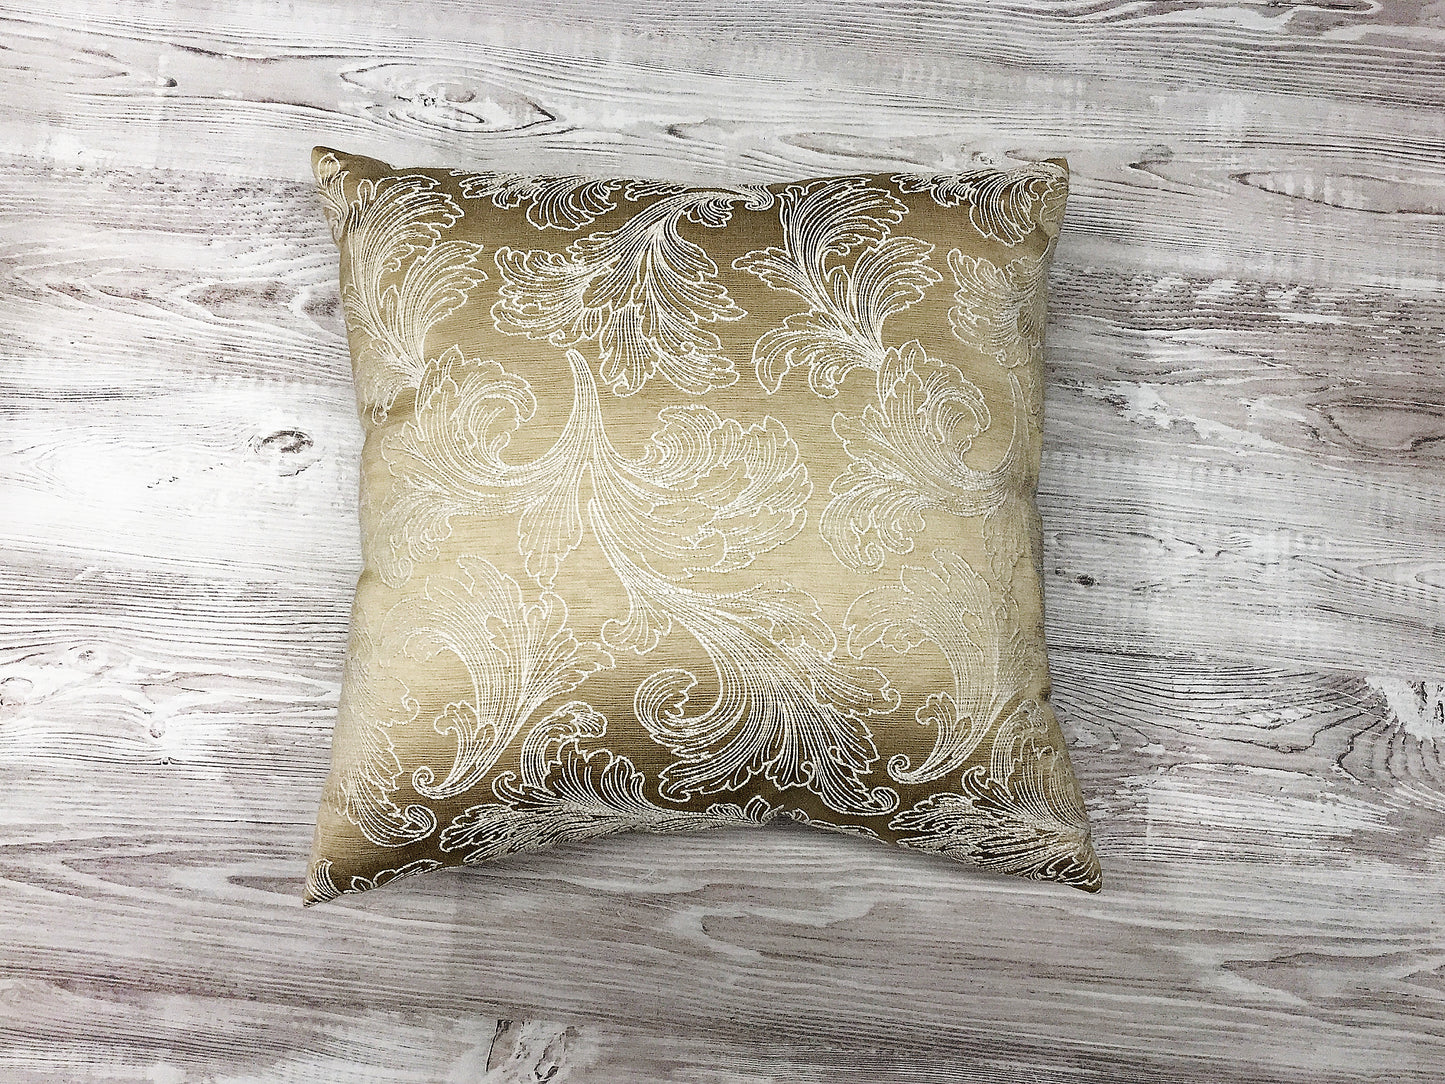 Luxury cushion "Frost on Silk"